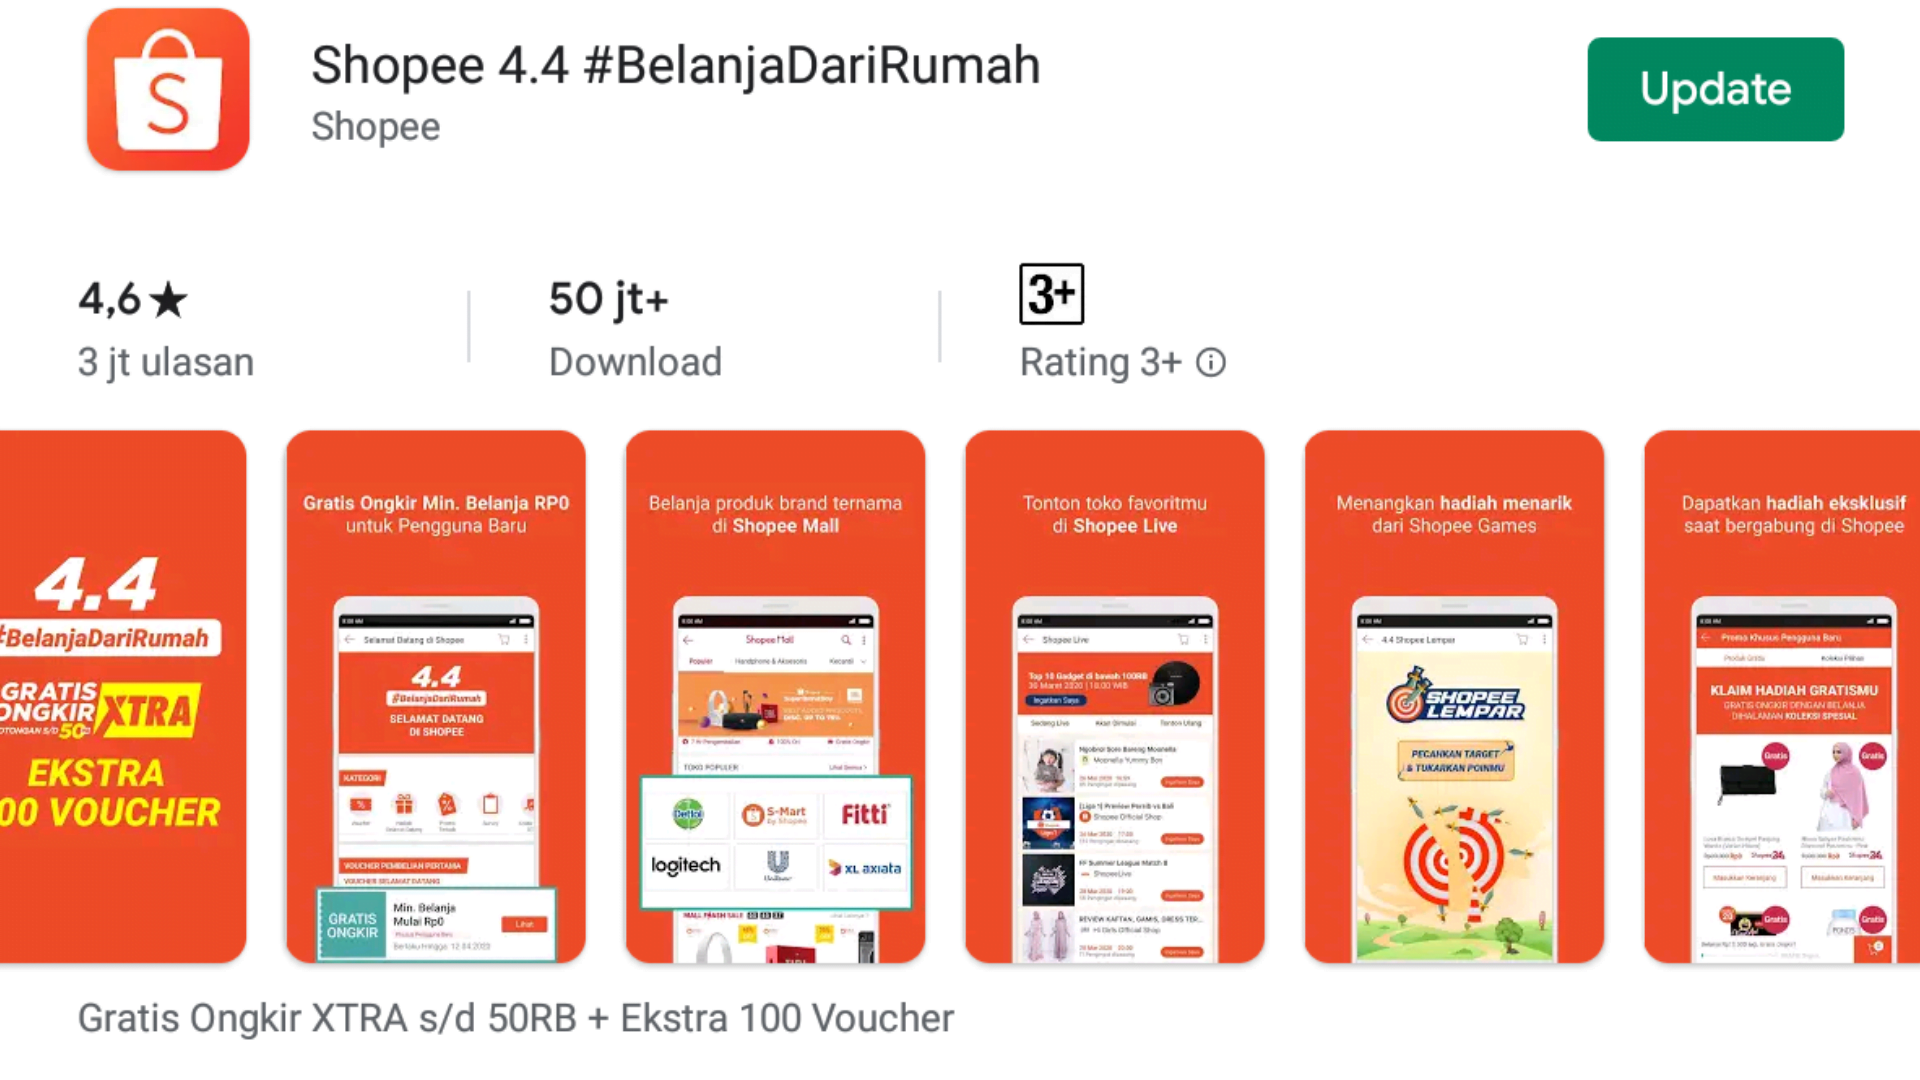 Mengenal Aplikasi Belanja Online Shopee di Indonesia